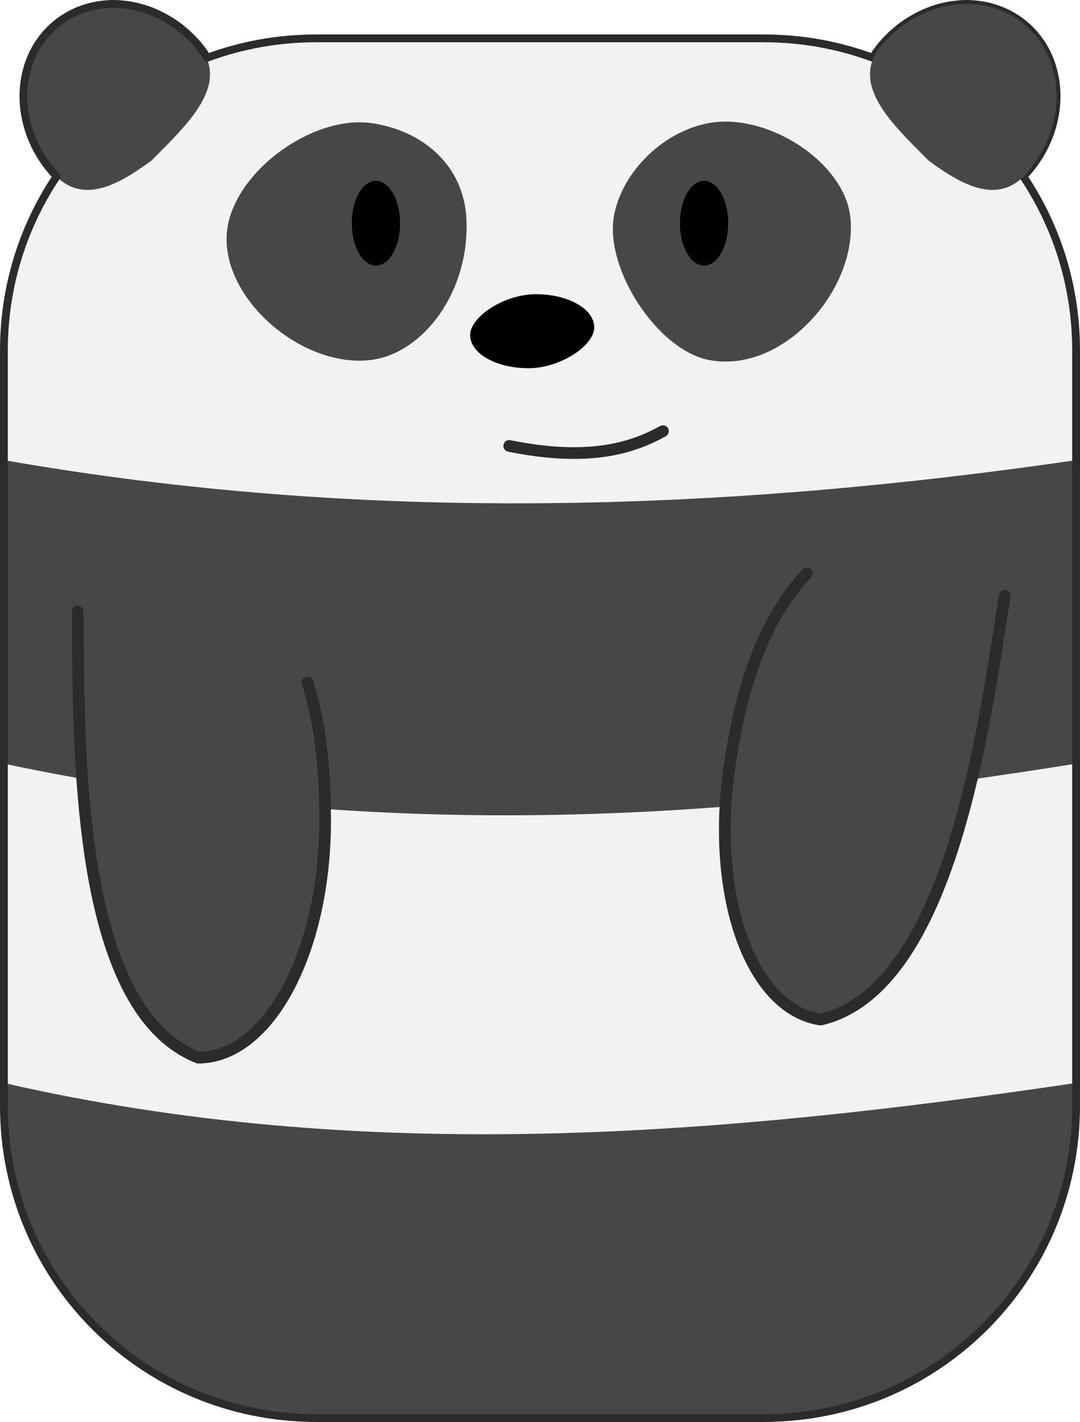 Cute Cartoon Panda with Hands png transparent